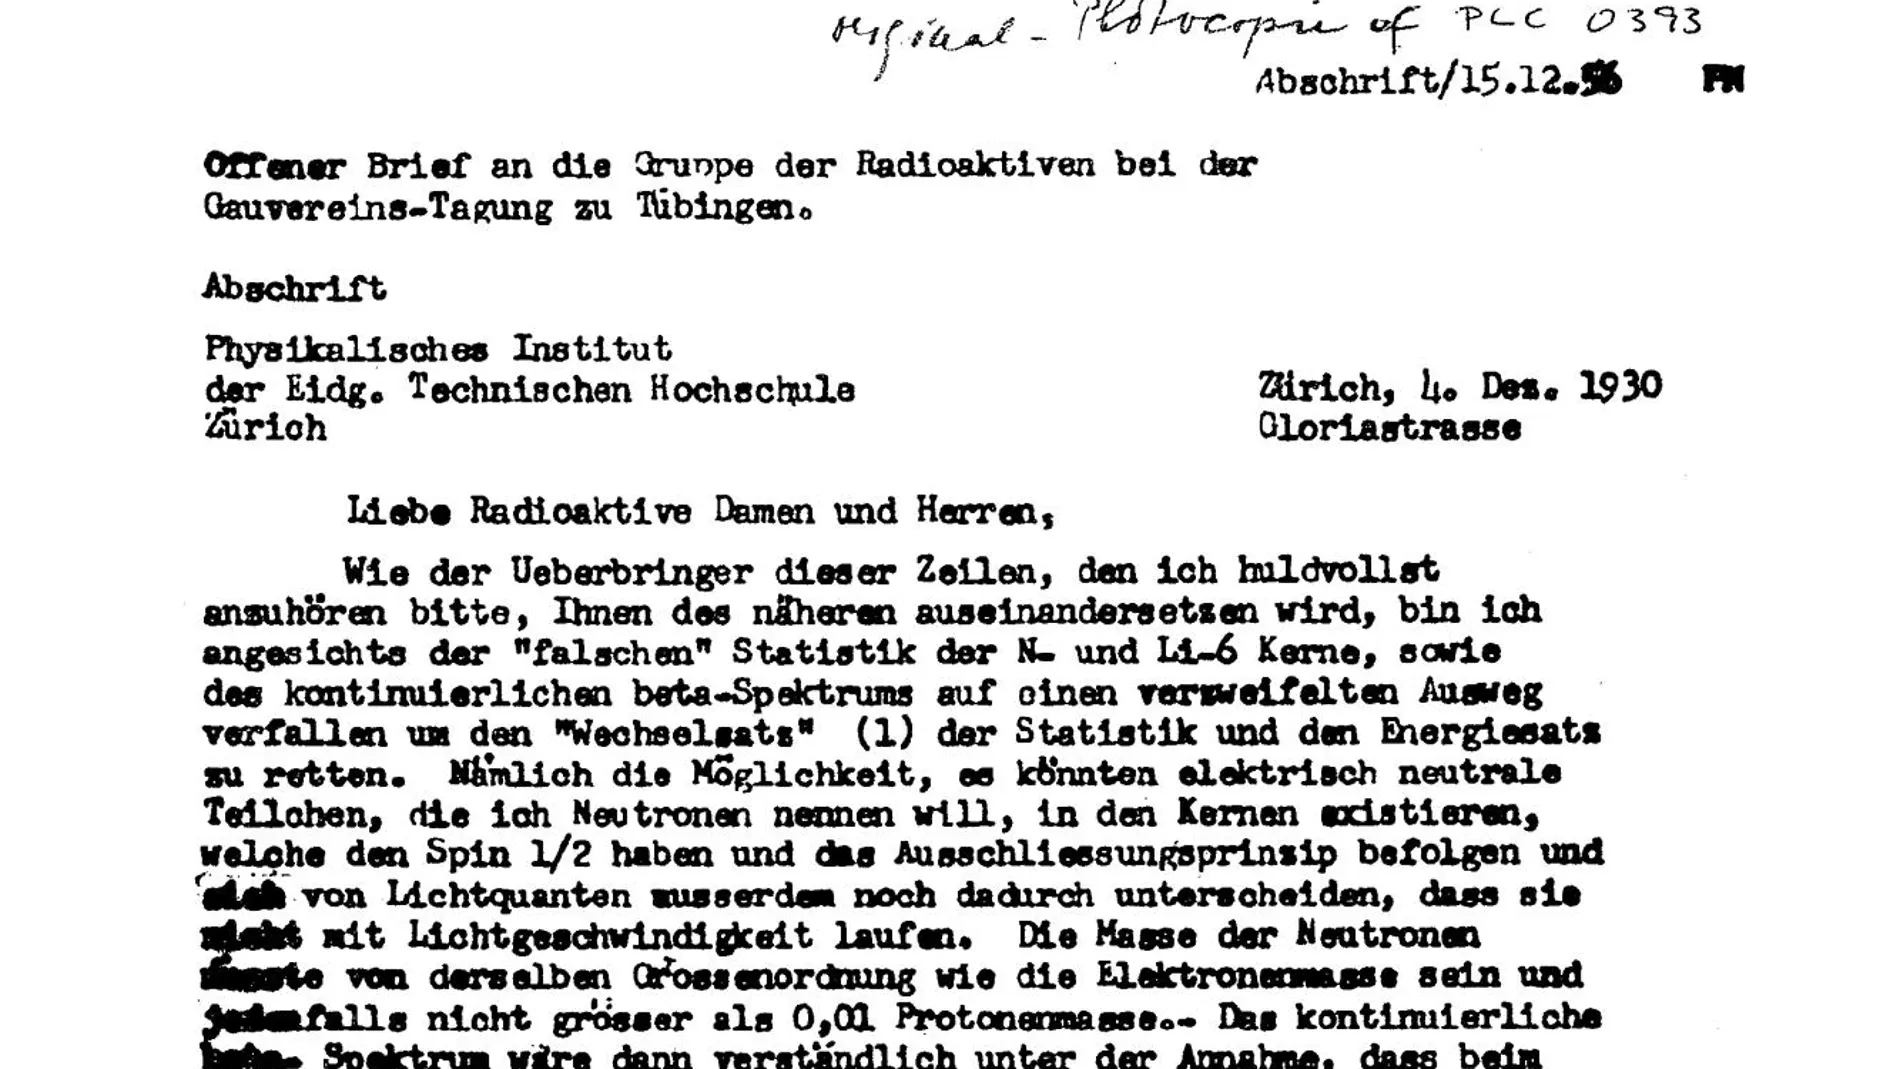 Un fragmento de la histórica carta en la que Wolfgang Pauli propuso la existencia del neutrino. El encabezamiento de la misiva, “Liebe Radioaktive Damen und Herren” (“Queridos señores y señoras radiactivos”), se ha convertido en un icono de la física del siglo XX.